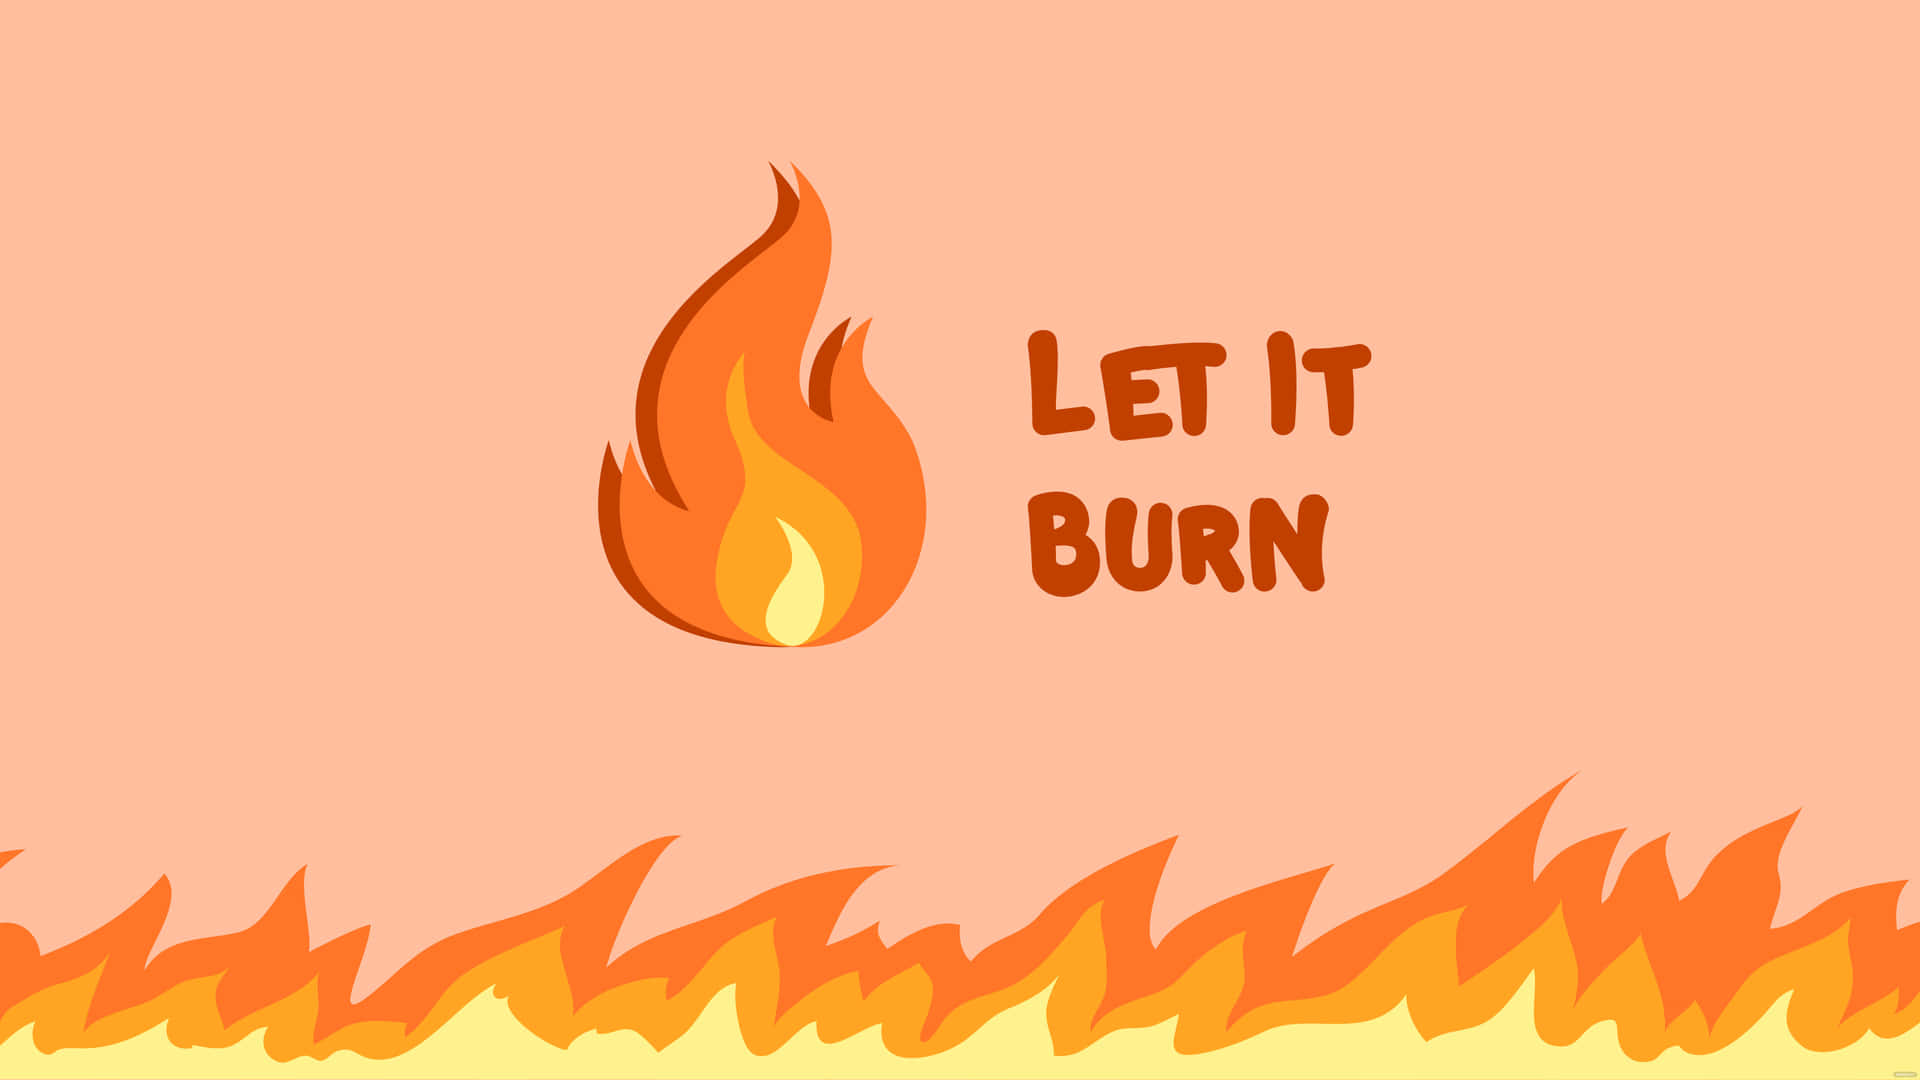 Let It Burn Orange Digital Art Background